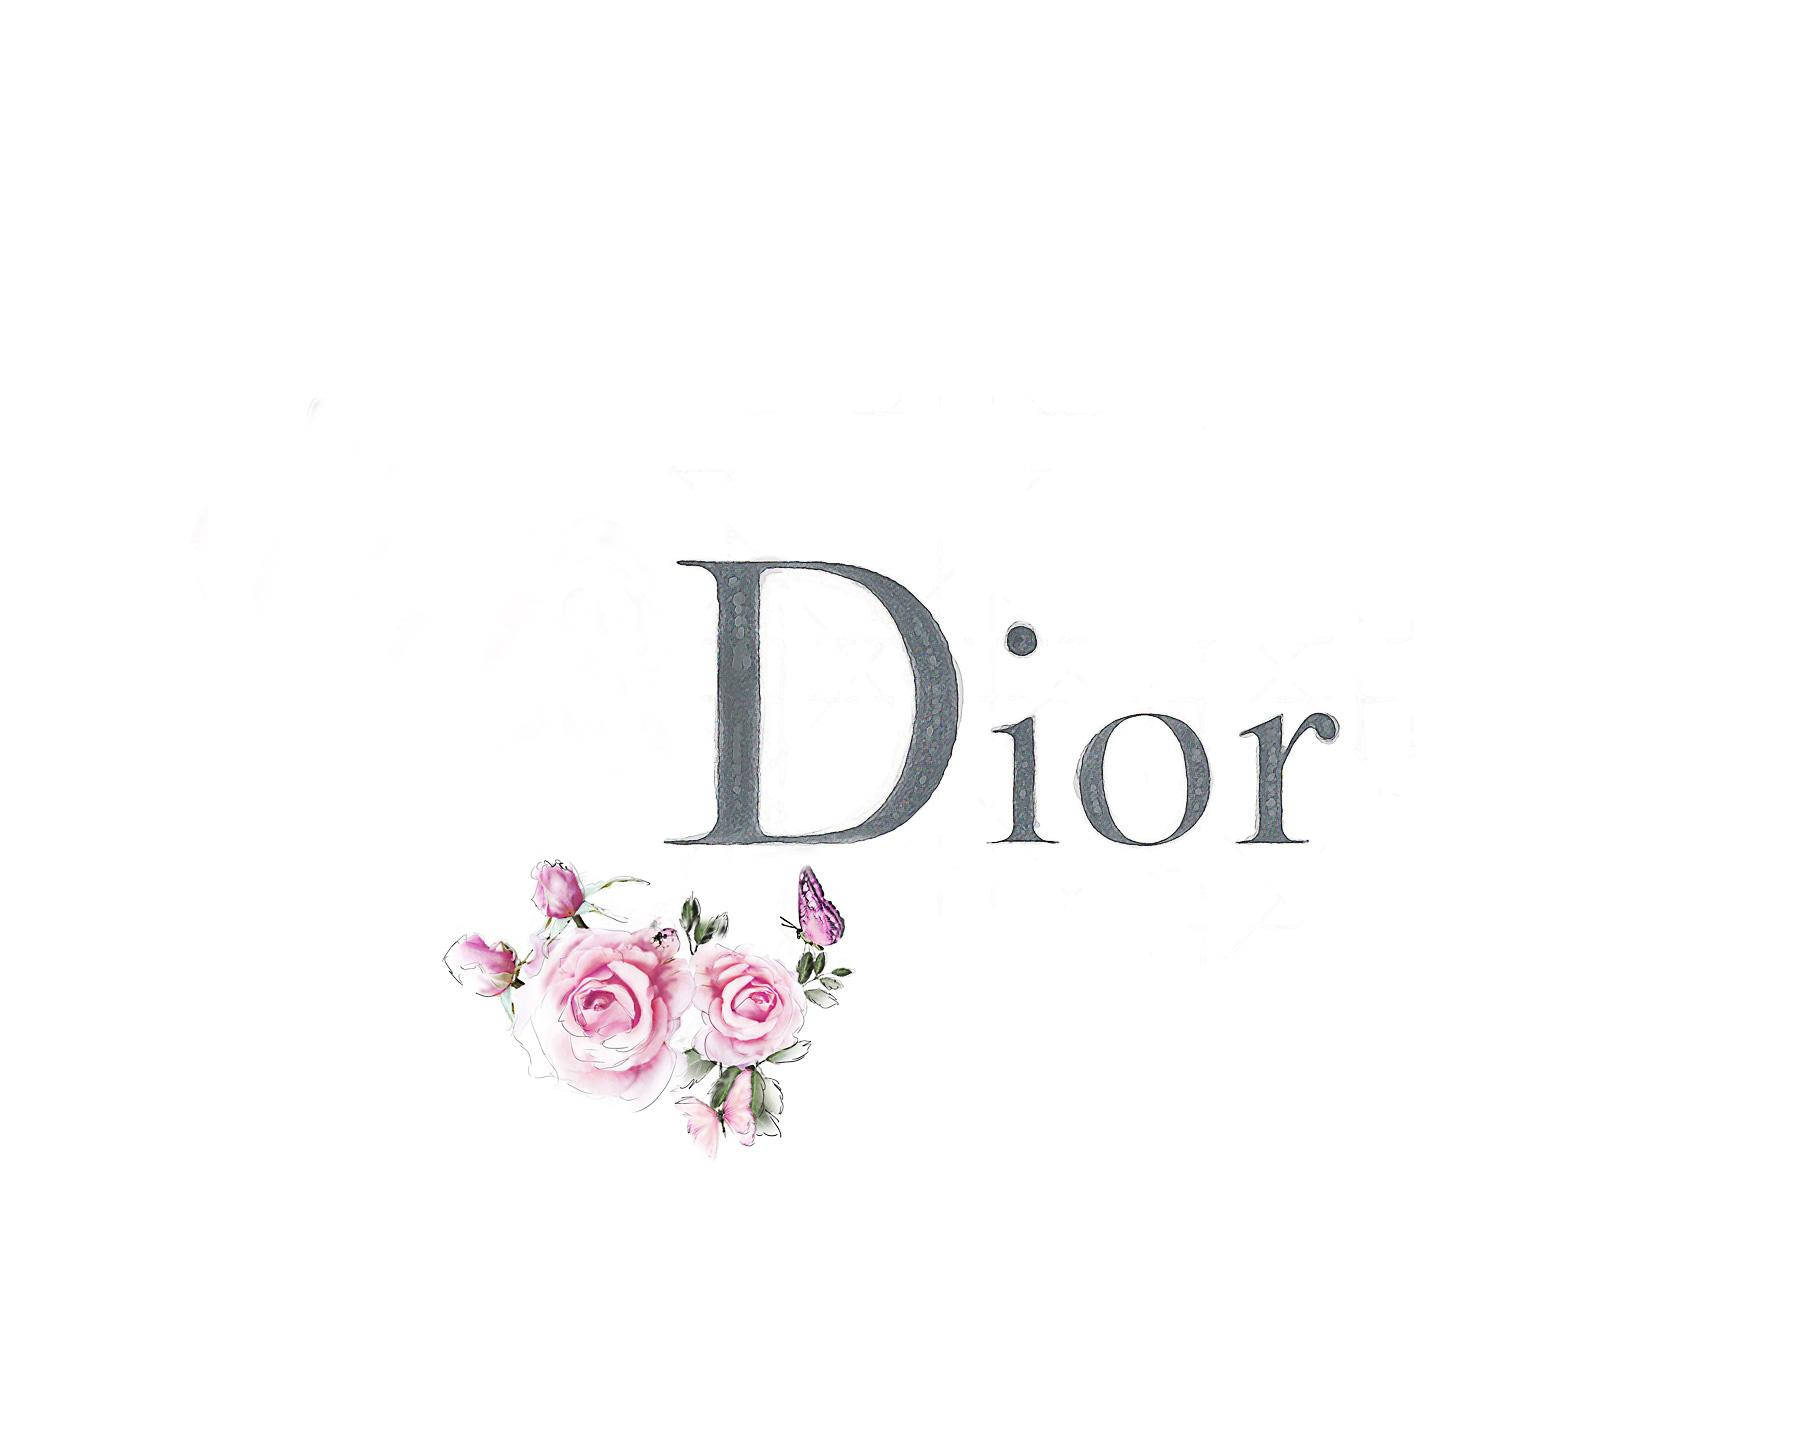 Christian Dior Parfums logo